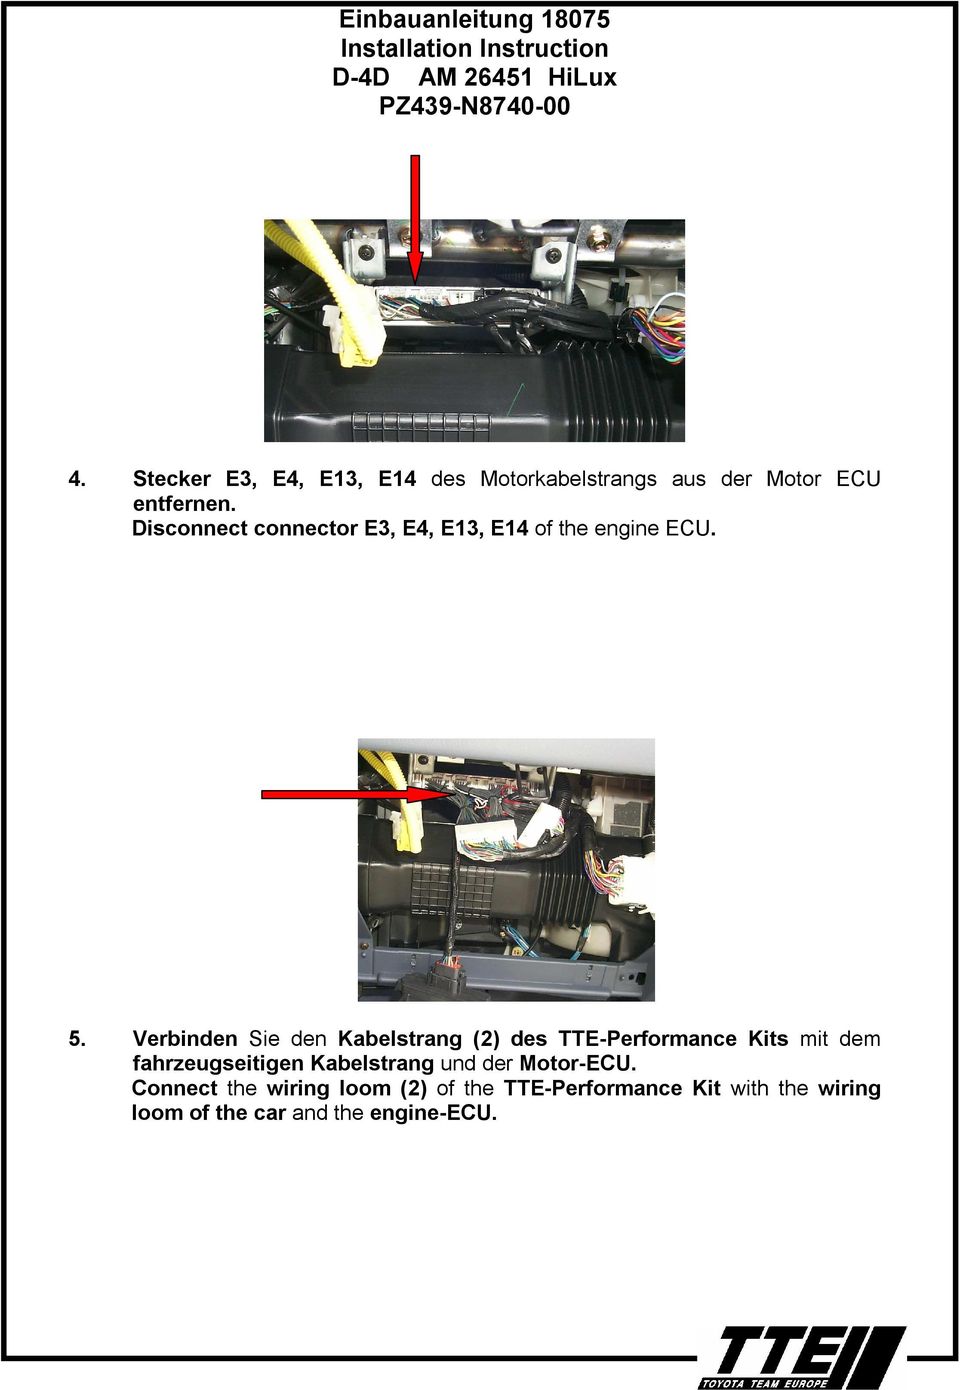 Verbinden Sie den Kabelstrang (2) des TTE-Performance Kits mit dem fahrzeugseitigen